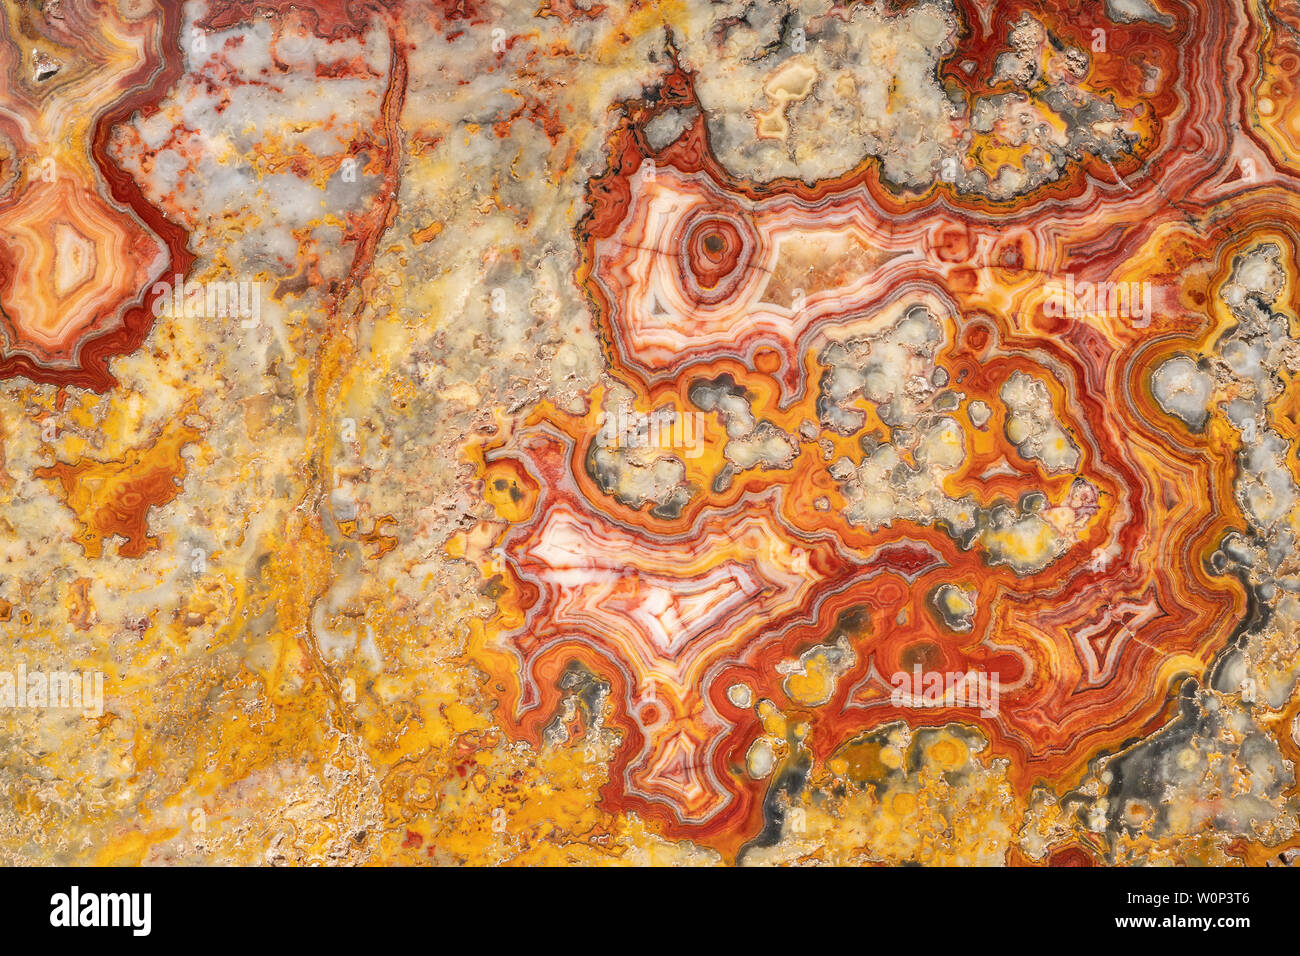 Australian crazy lace agata. Origine: Marillana, Australia. La cortesia di ZRS fossili, di Dominique Braud/Dembinsky Foto Assoc Foto Stock